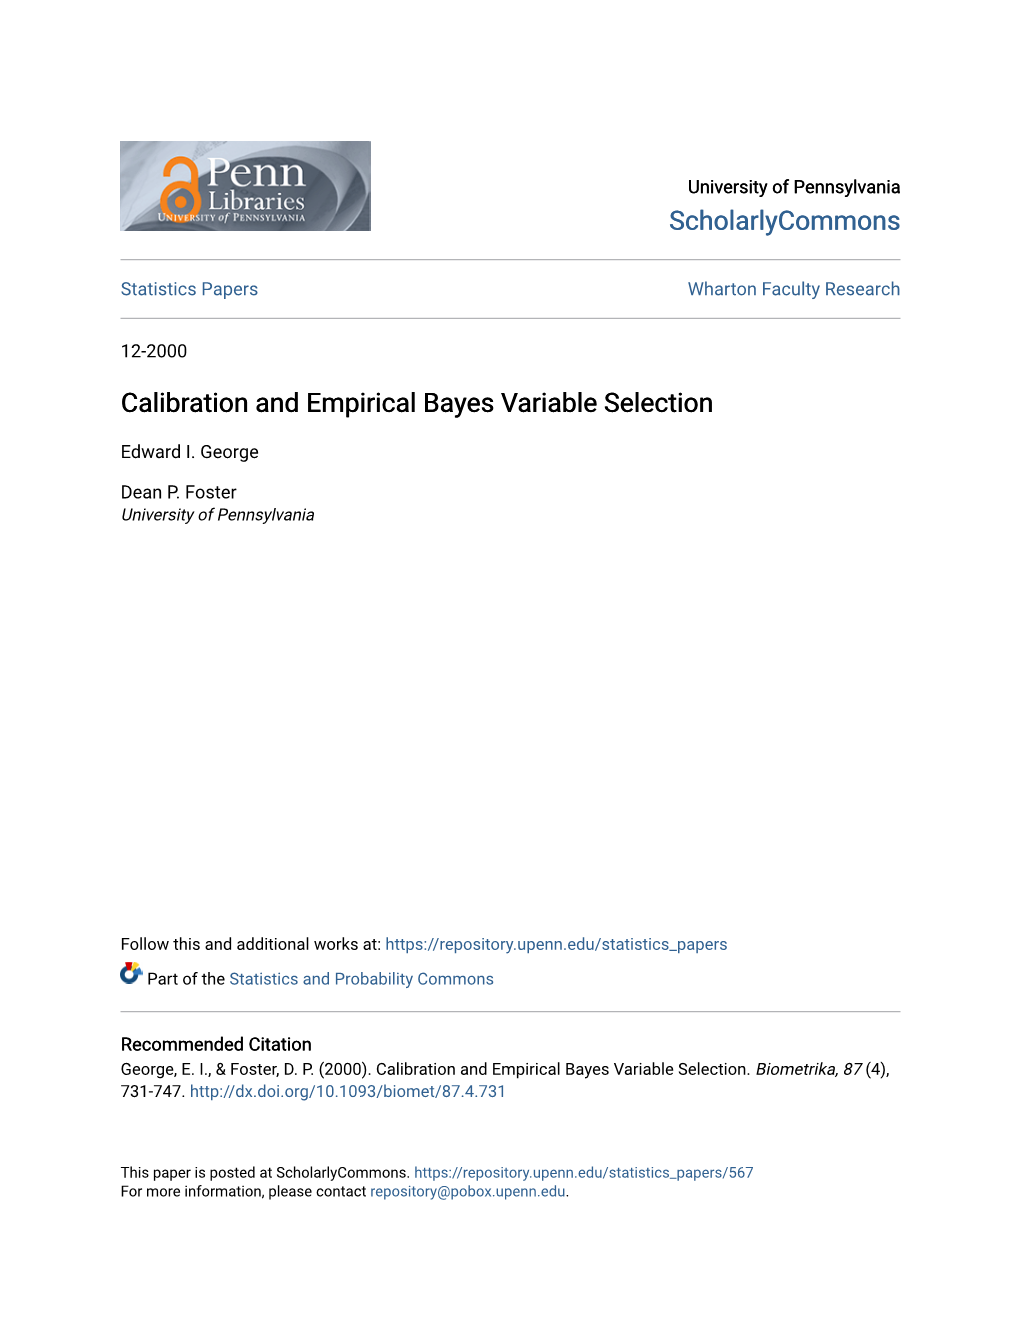 Calibration and Empirical Bayes Variable Selection